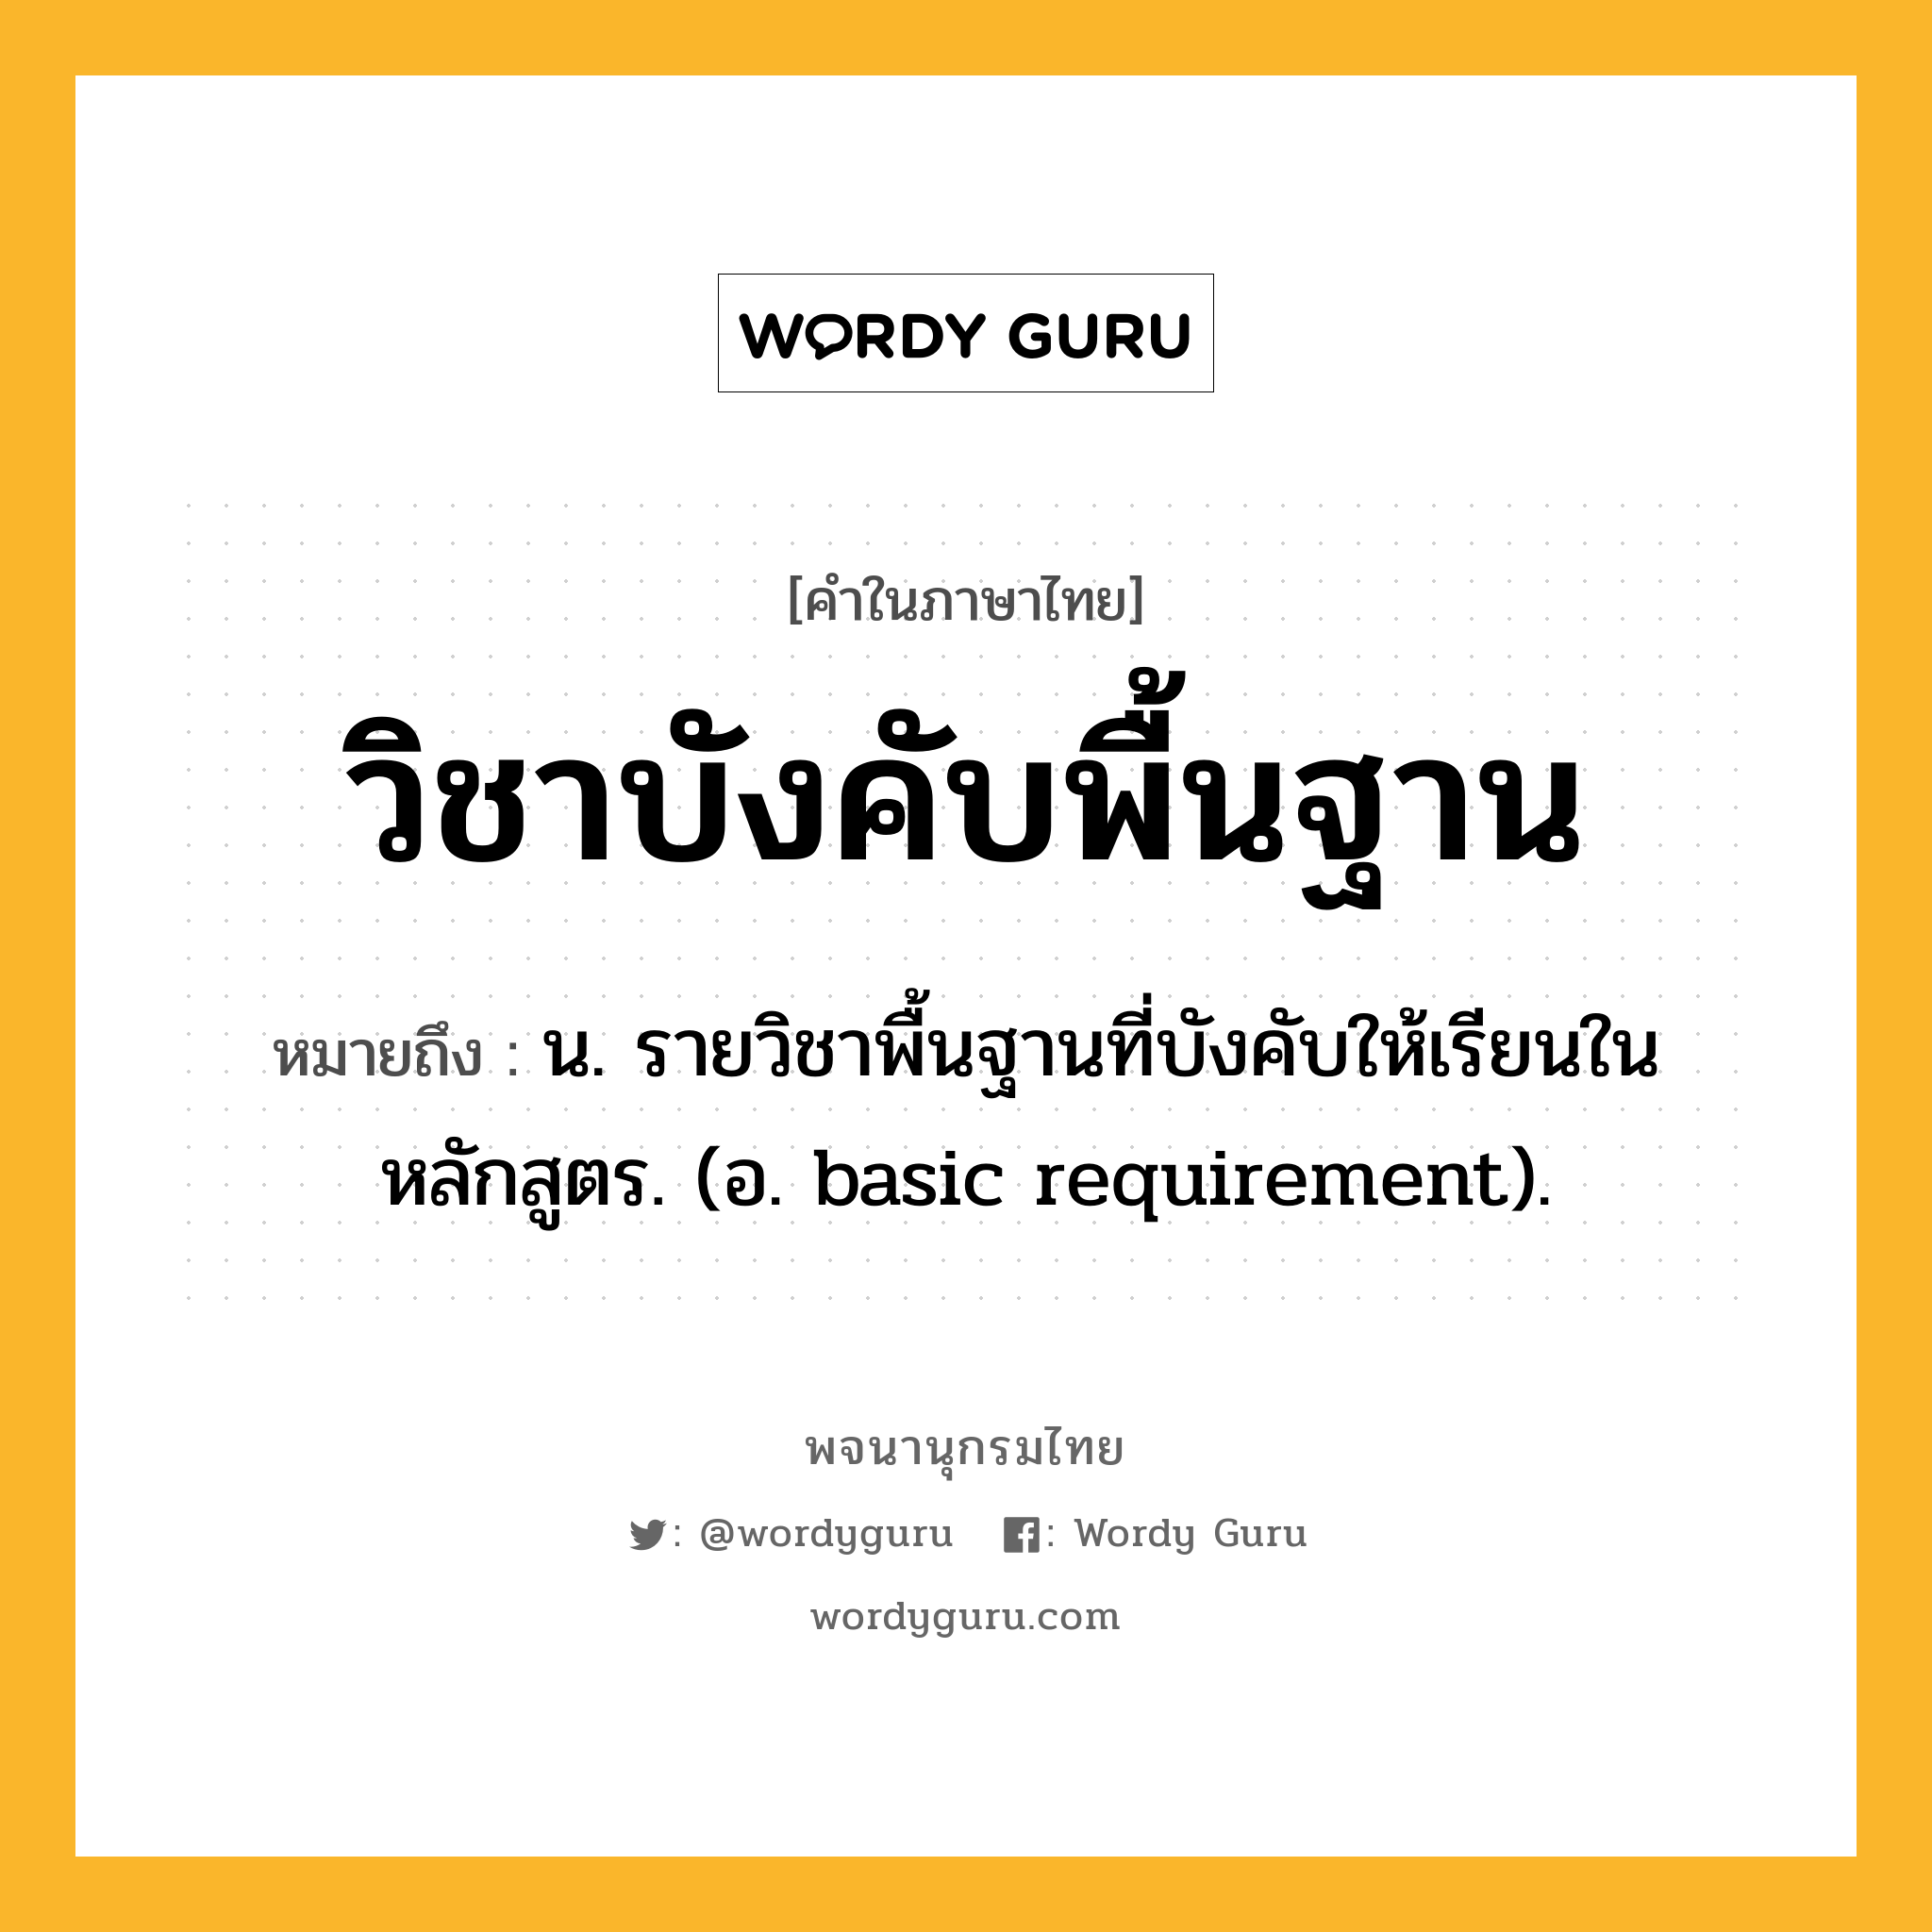 วิชาบังคับพื้นฐาน หมายถึงอะไร?, คำในภาษาไทย วิชาบังคับพื้นฐาน หมายถึง น. รายวิชาพื้นฐานที่บังคับให้เรียนในหลักสูตร. (อ. basic requirement).